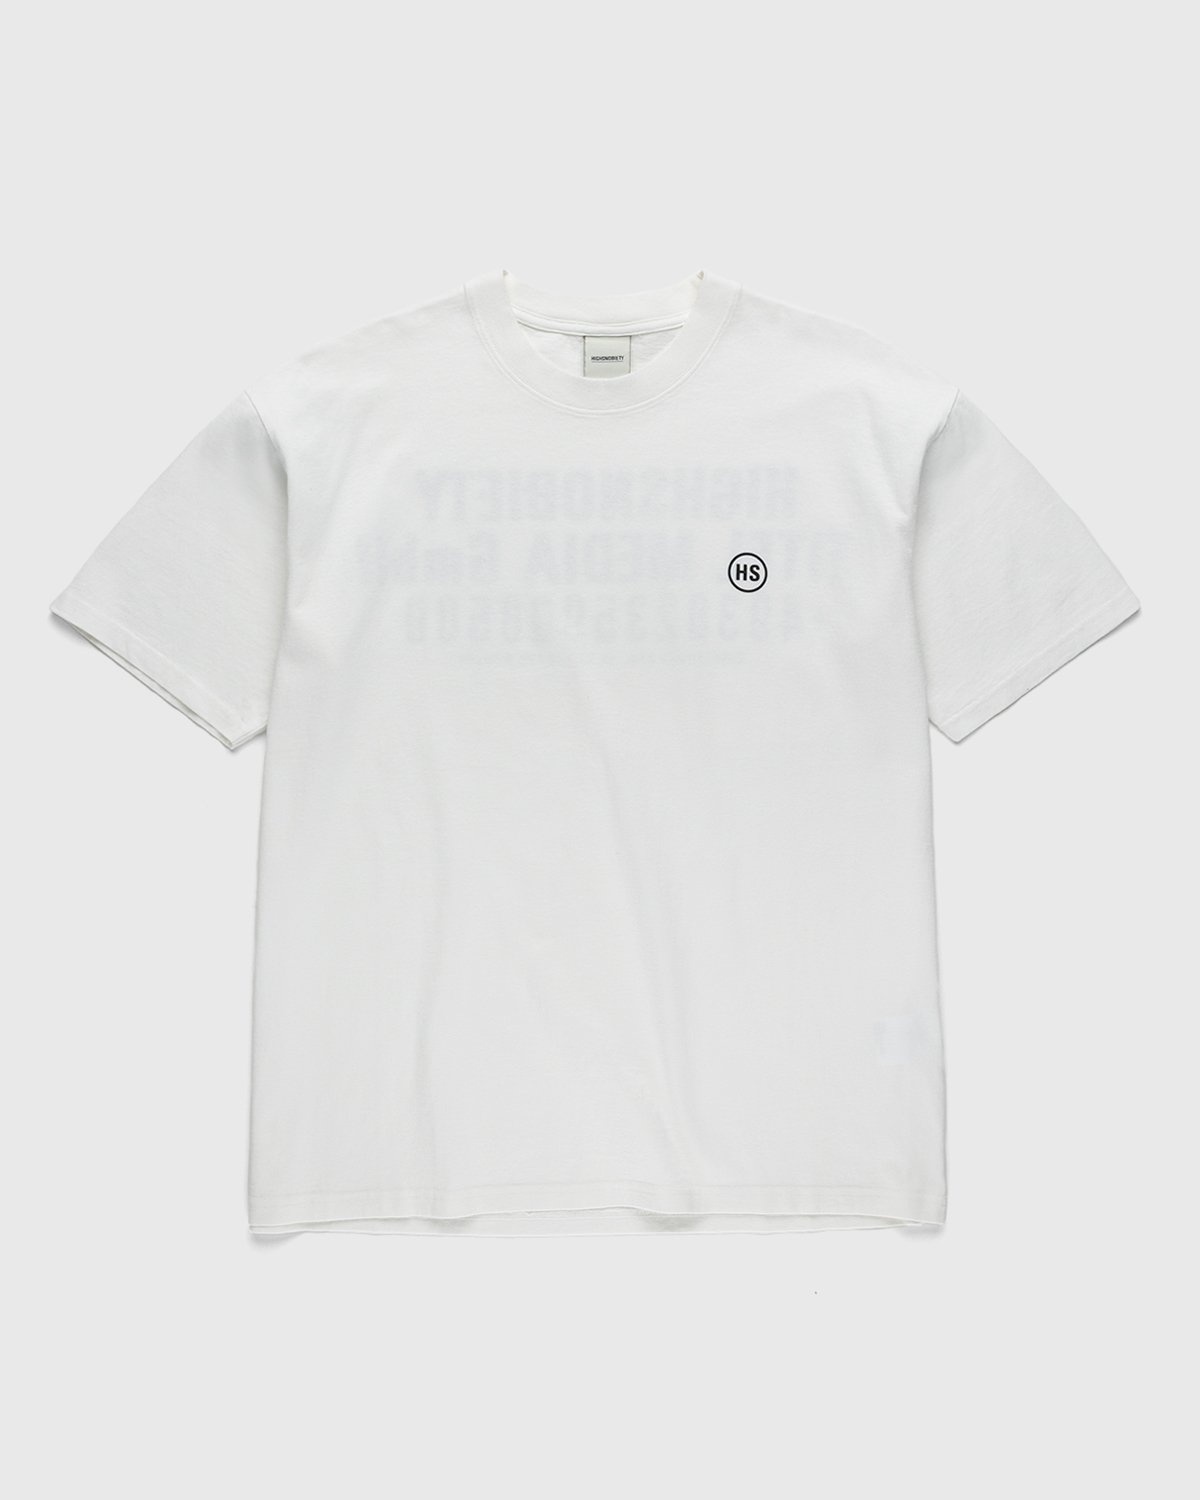 Highsnobiety – Titel Media GmbH T-Shirt White - T-shirts - White - Image 2